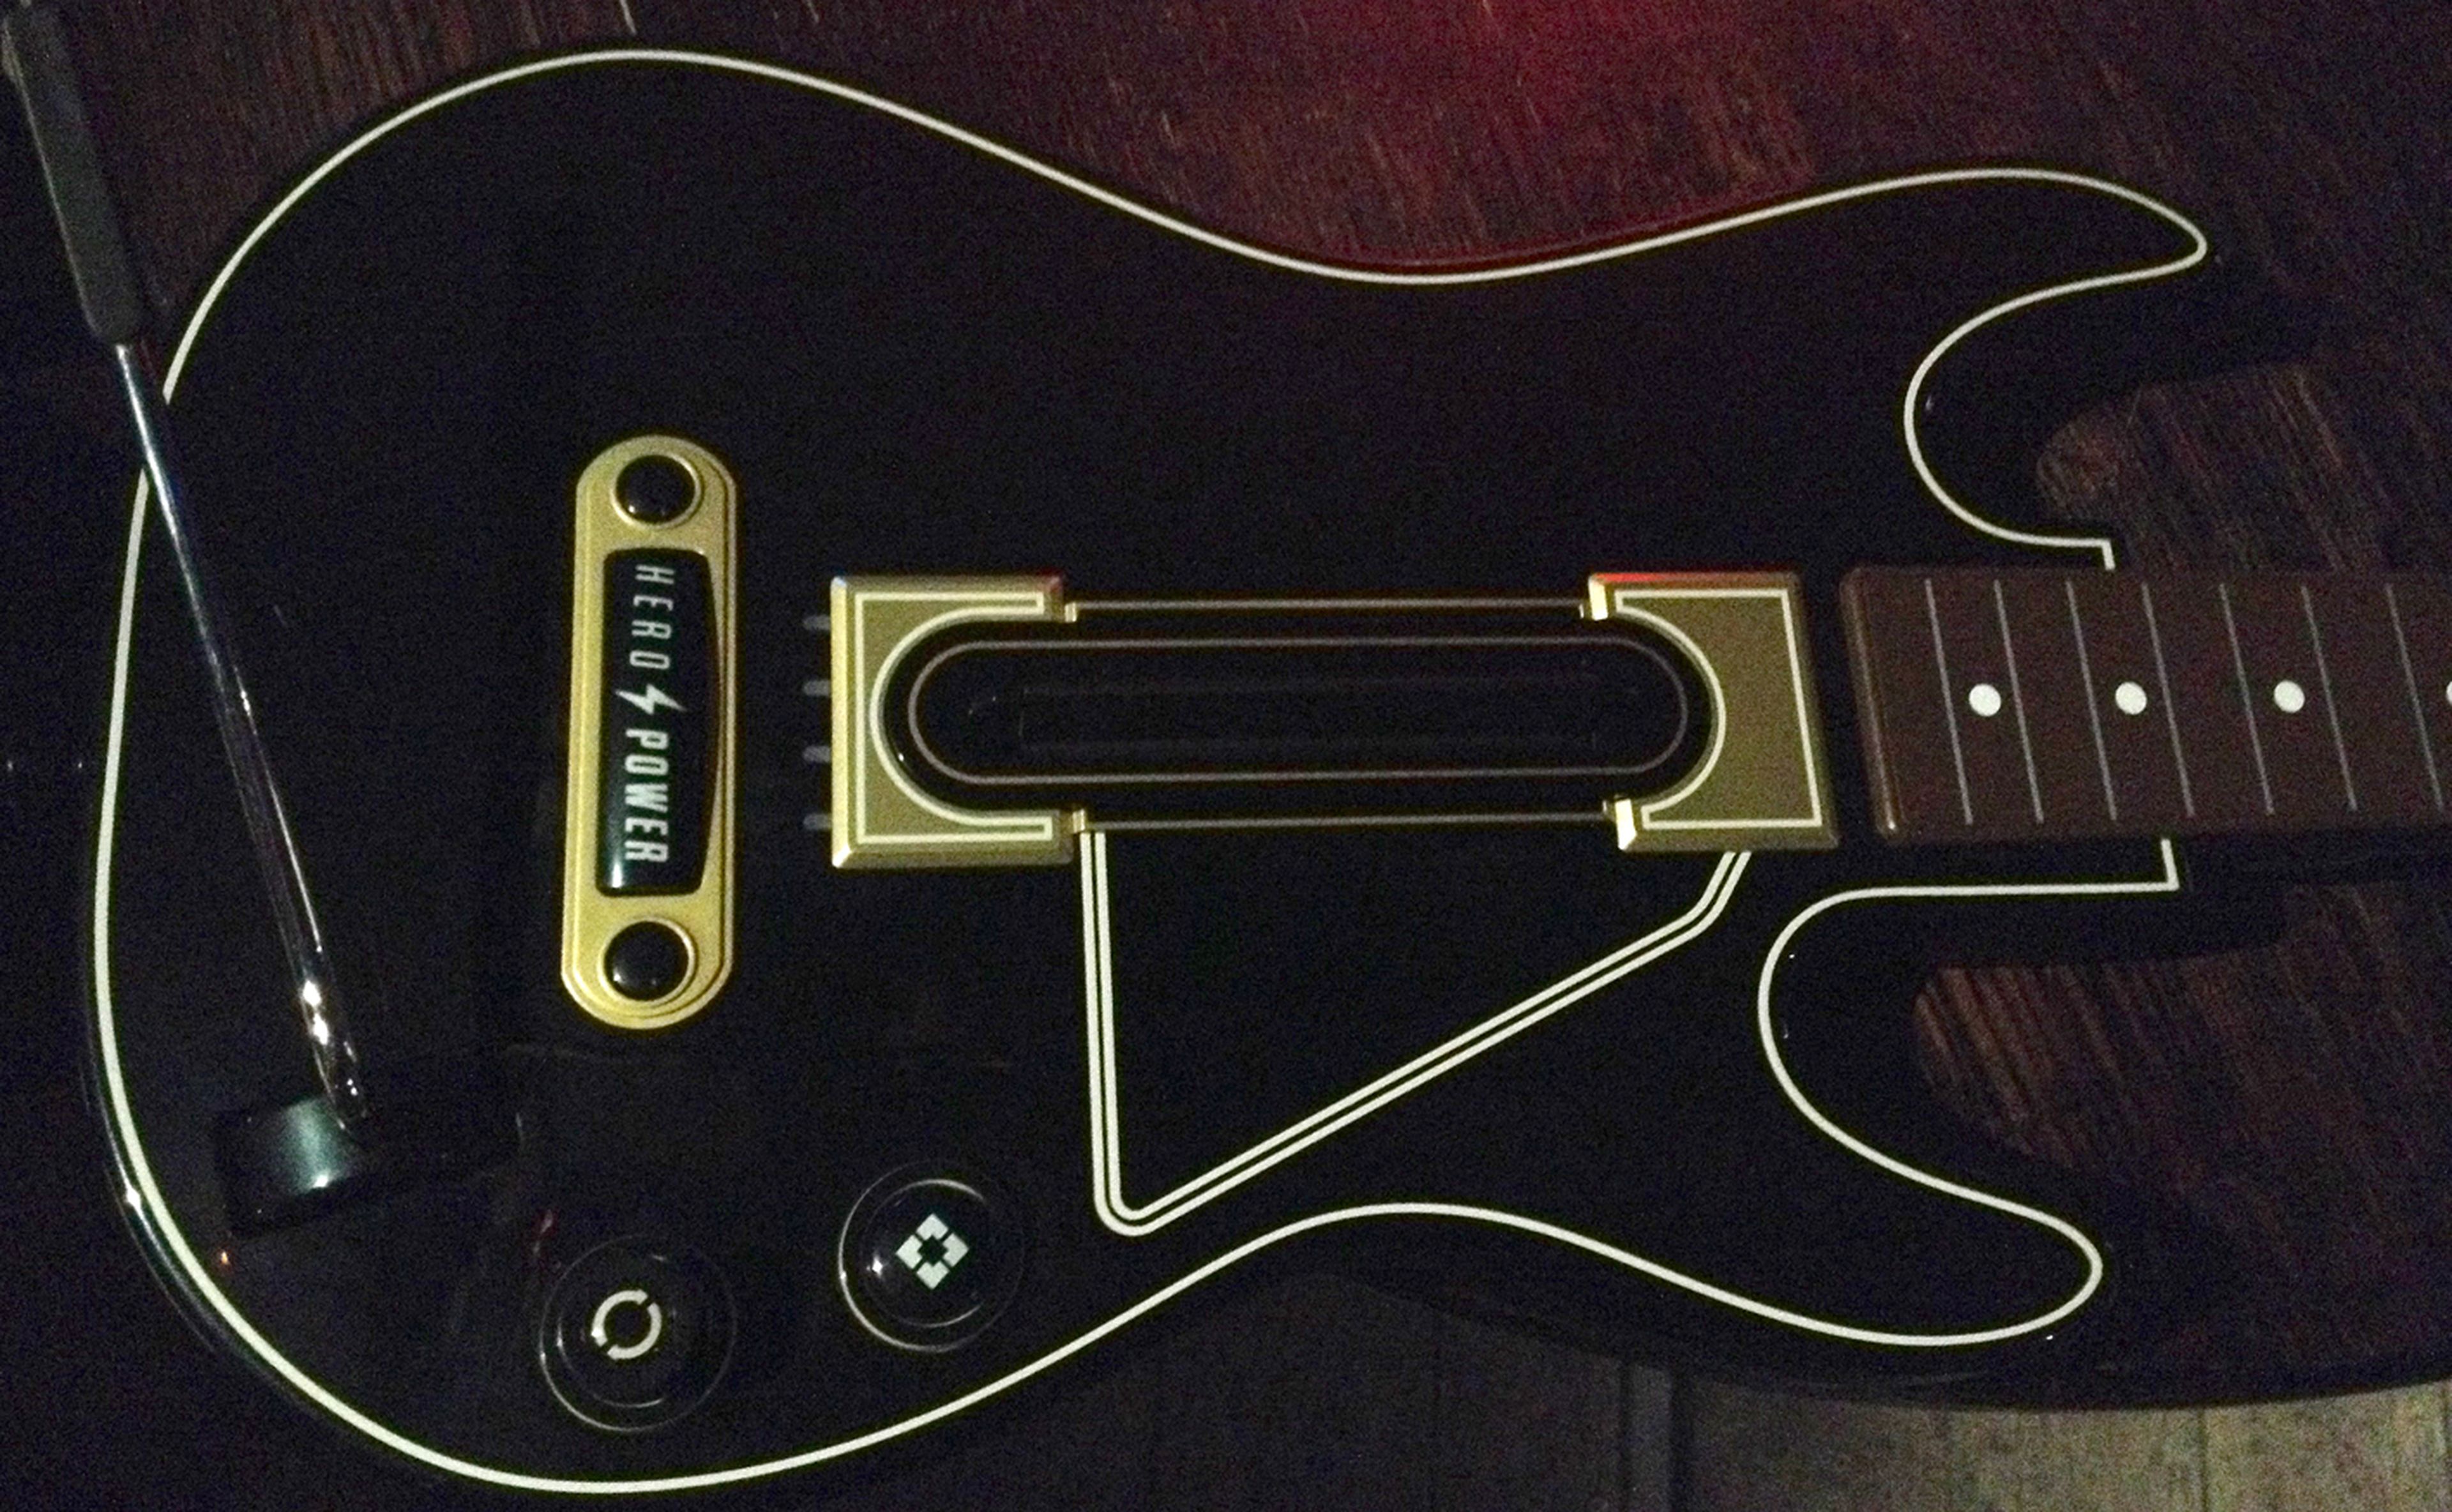 Guitar Hero 2015 es Guitar Hero Live!